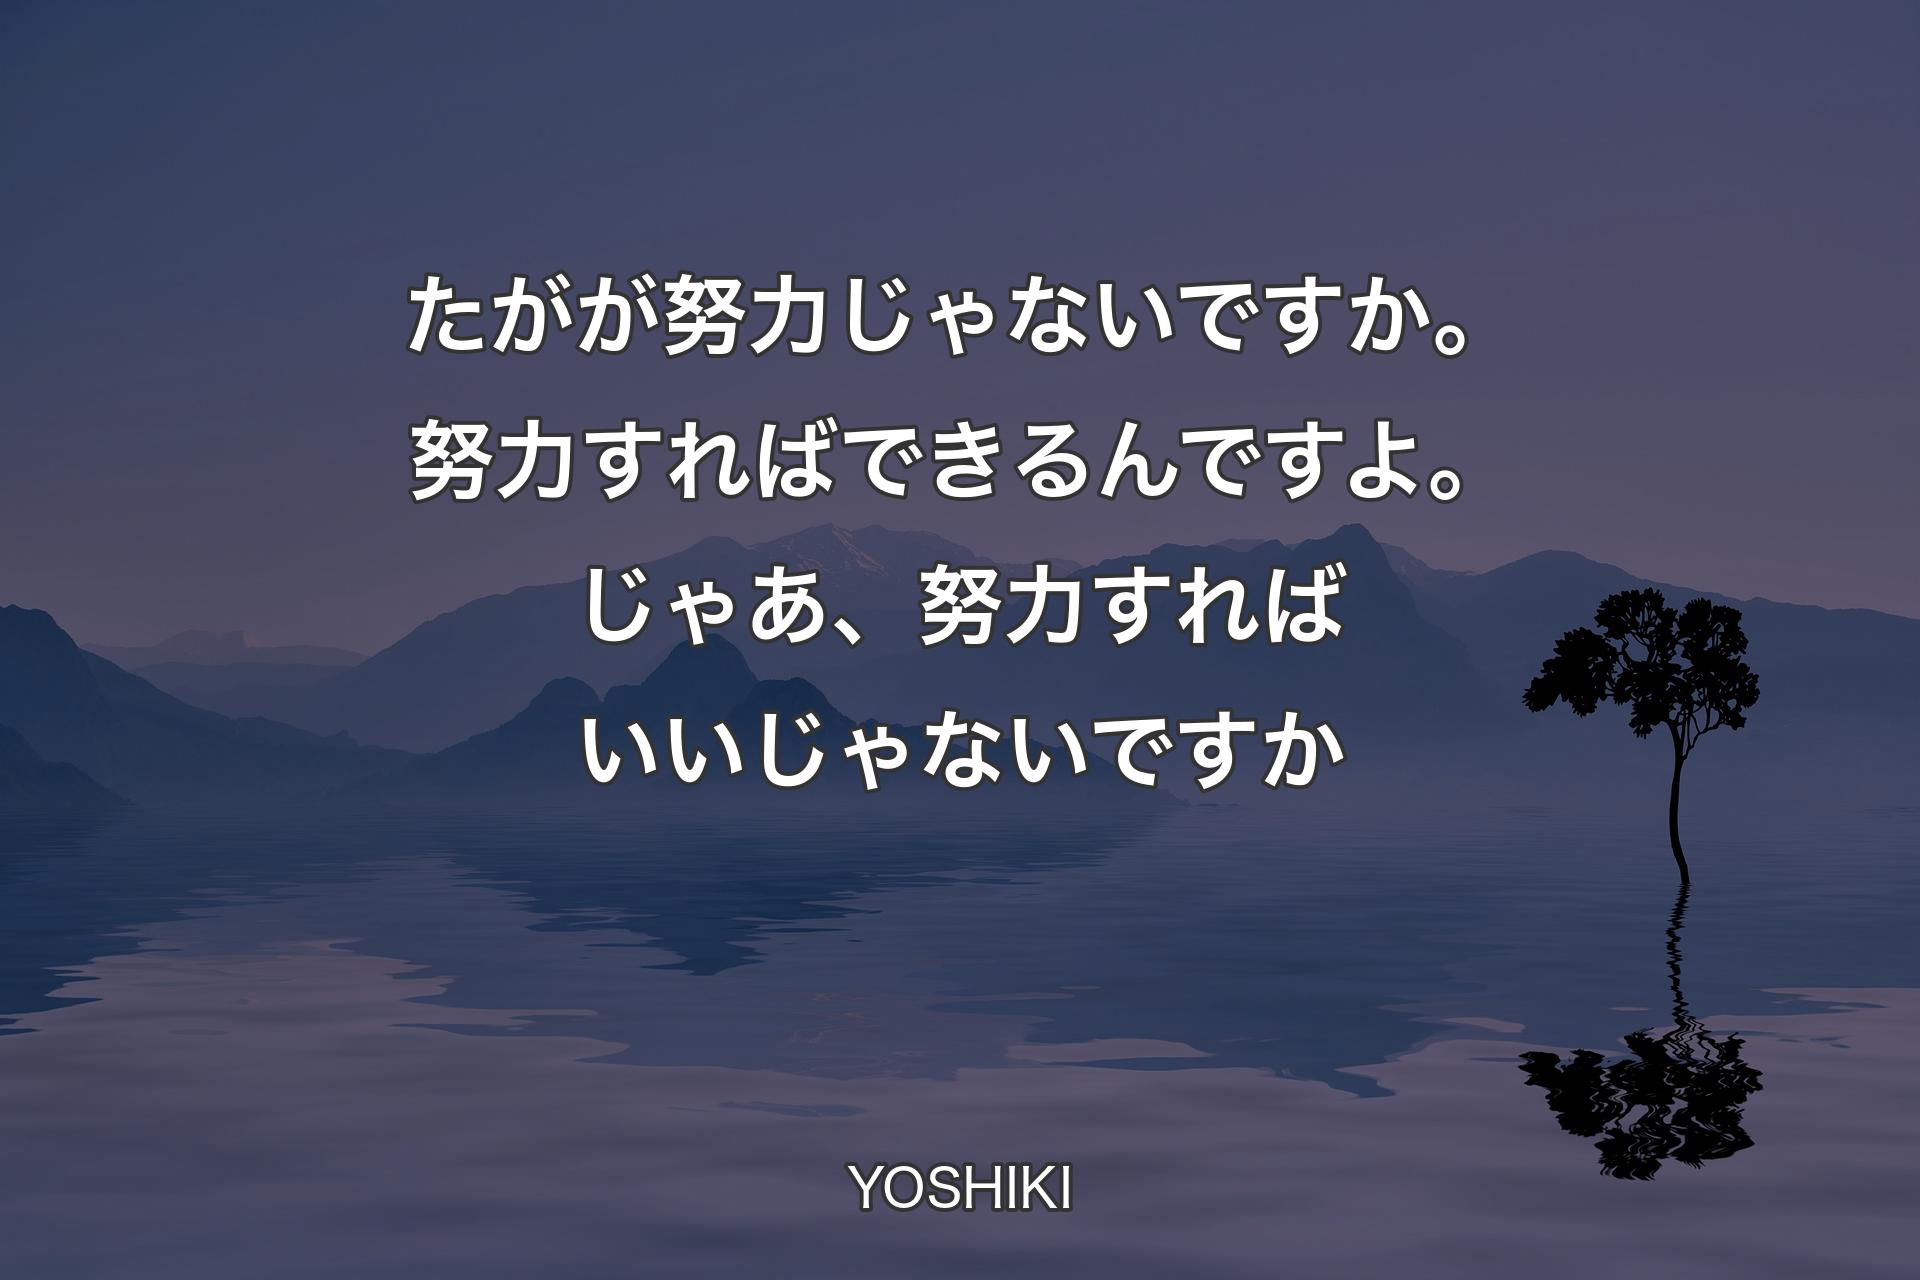 【背景4】たがが努力じゃないですか。努力すればできるんですよ。じゃあ、努力すればいいじゃないですか - YOSHIKI